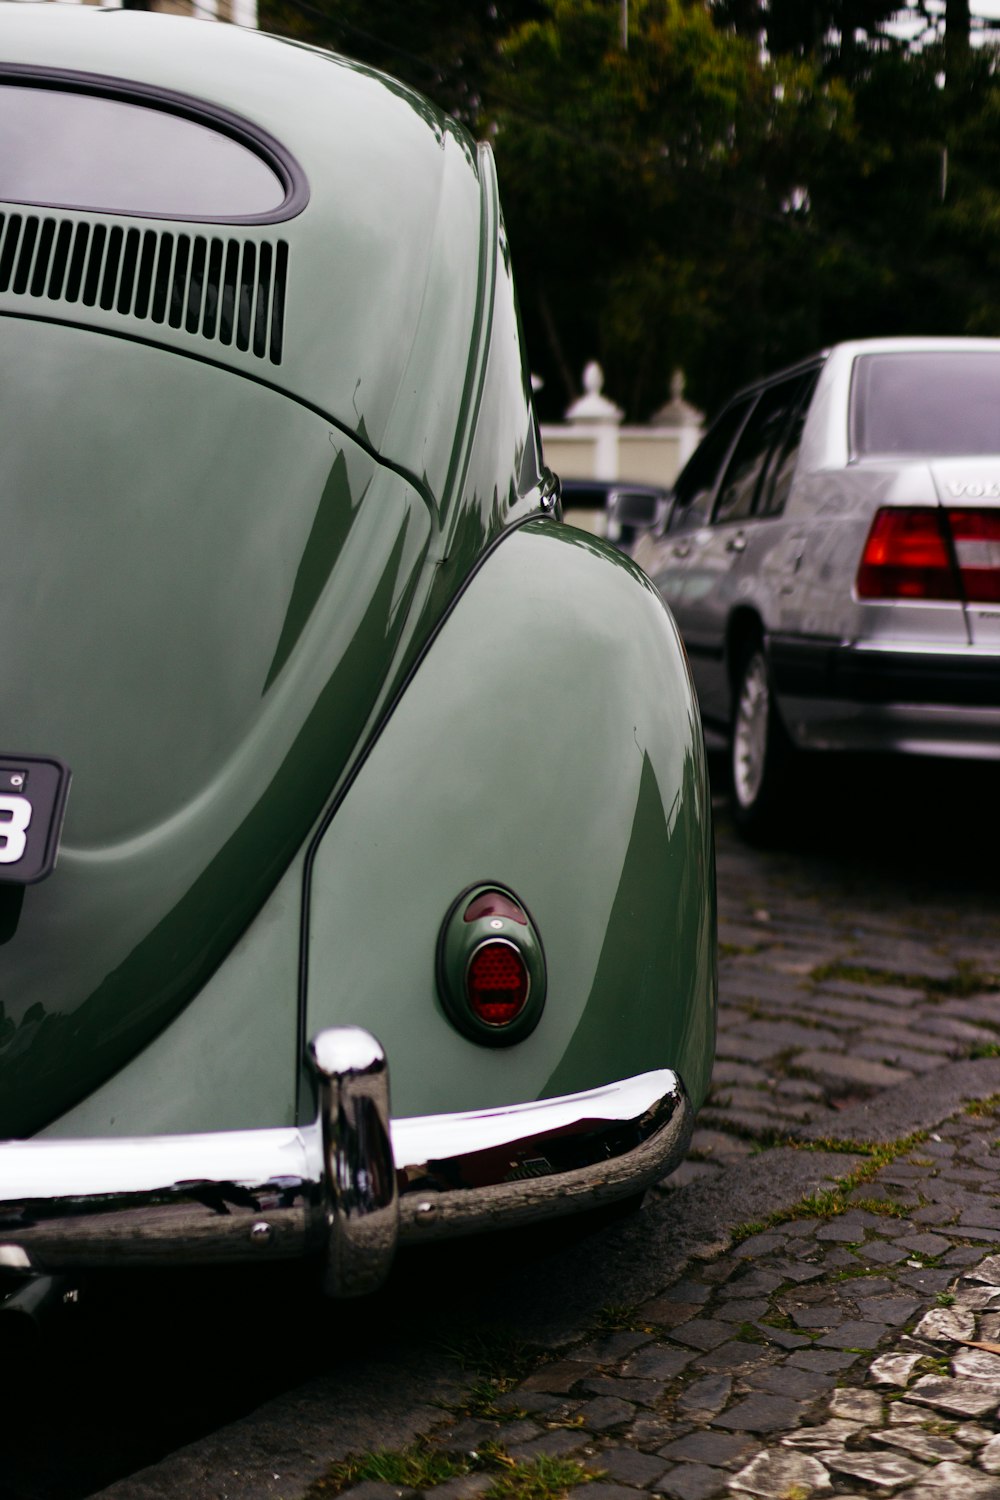 grüner VW Käfer in der Nähe von grauem Fahrzeug geparkt